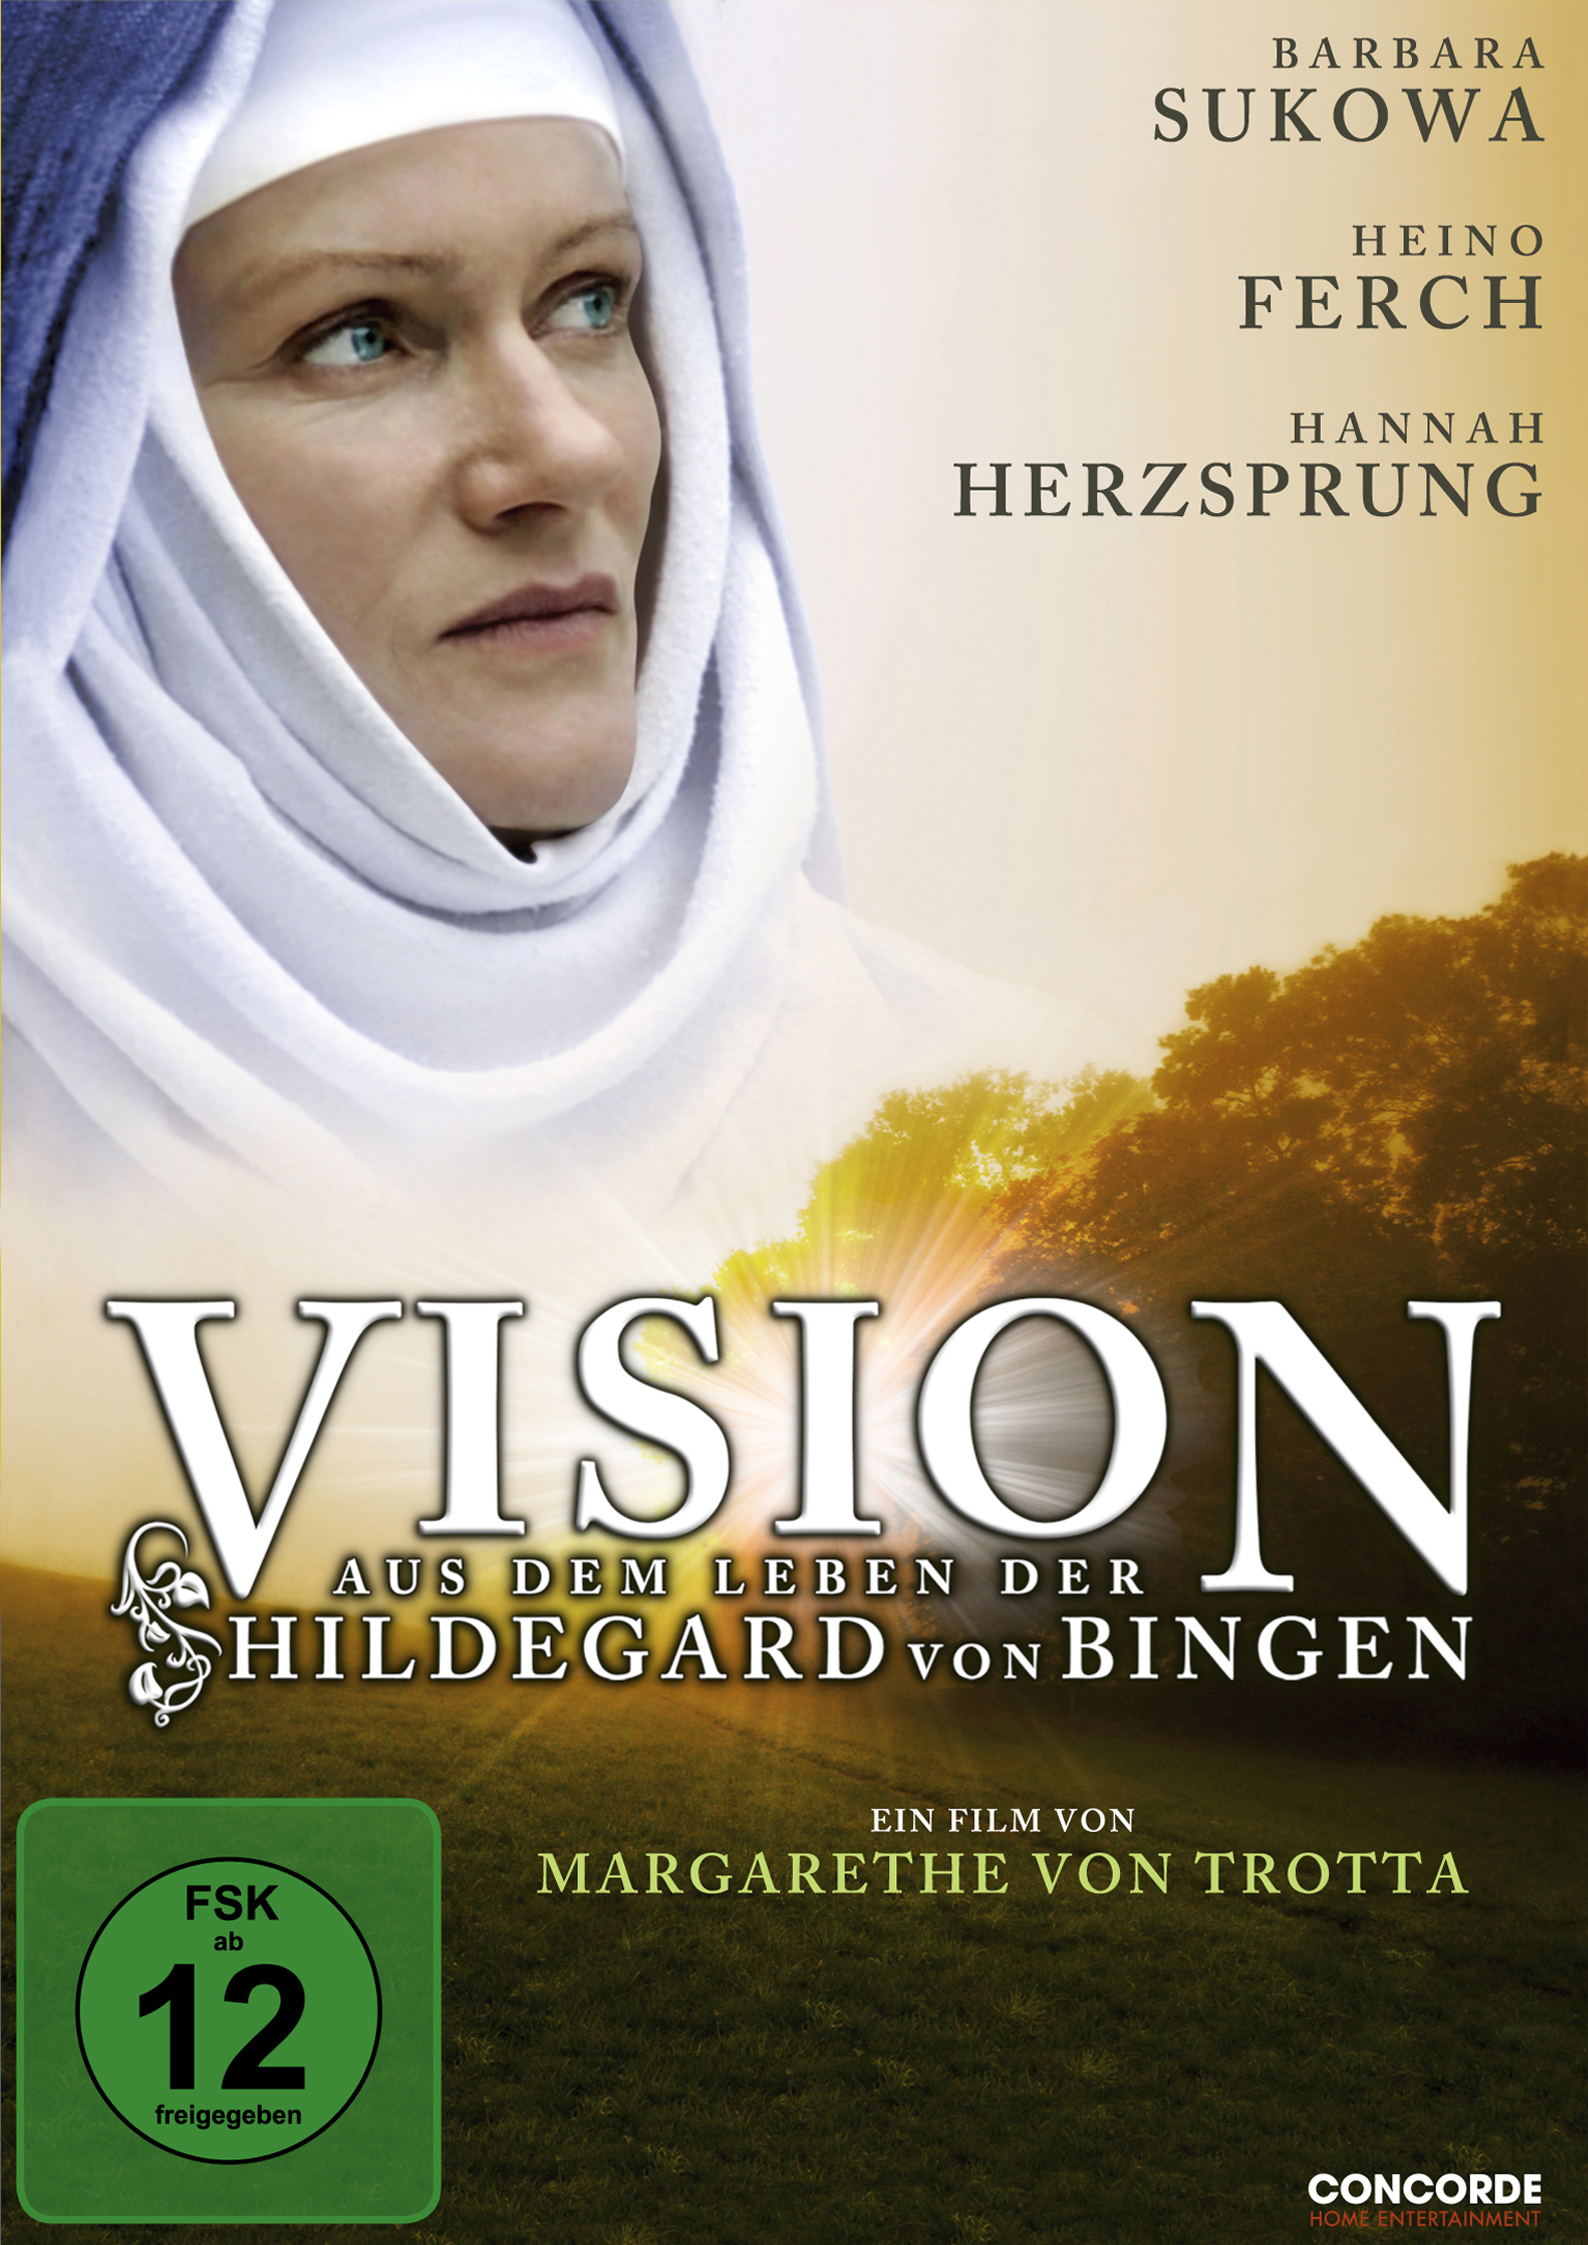 Vision - Aus dem Leben der Hildegard von Bingen movie